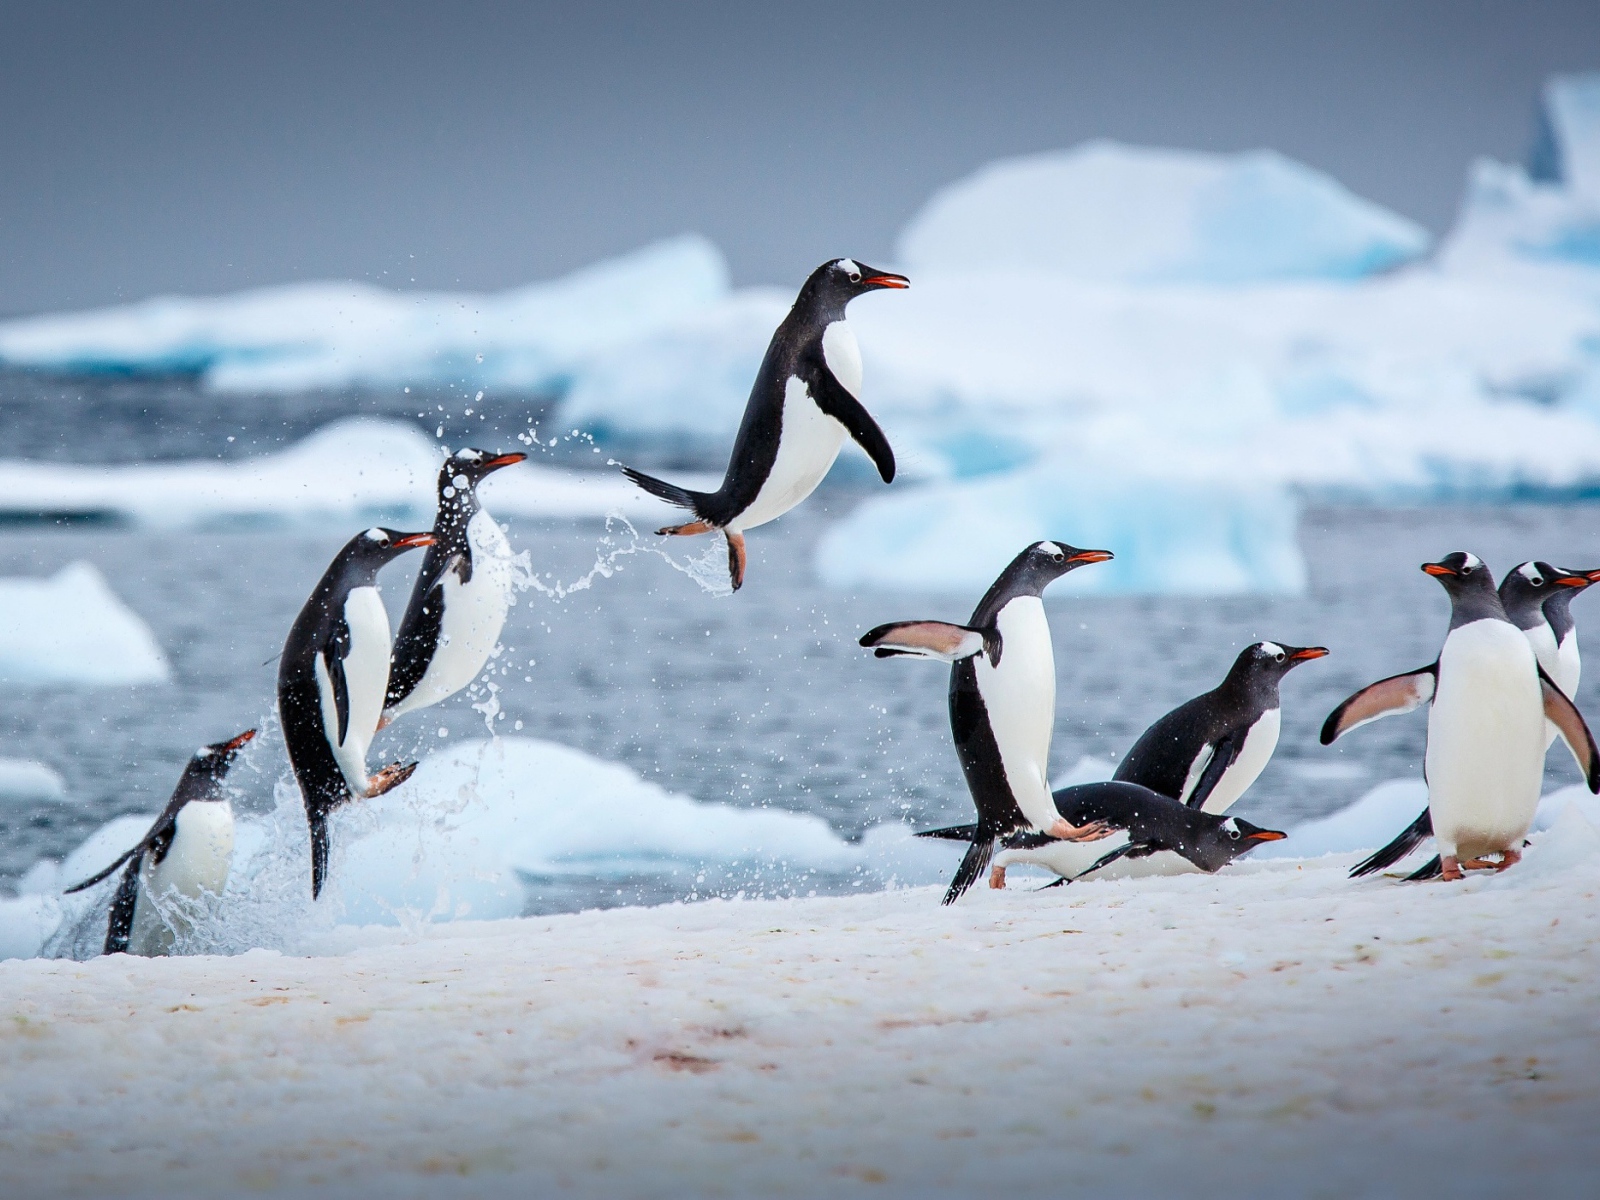 Пингвины выпрыгивают из воды на снег 